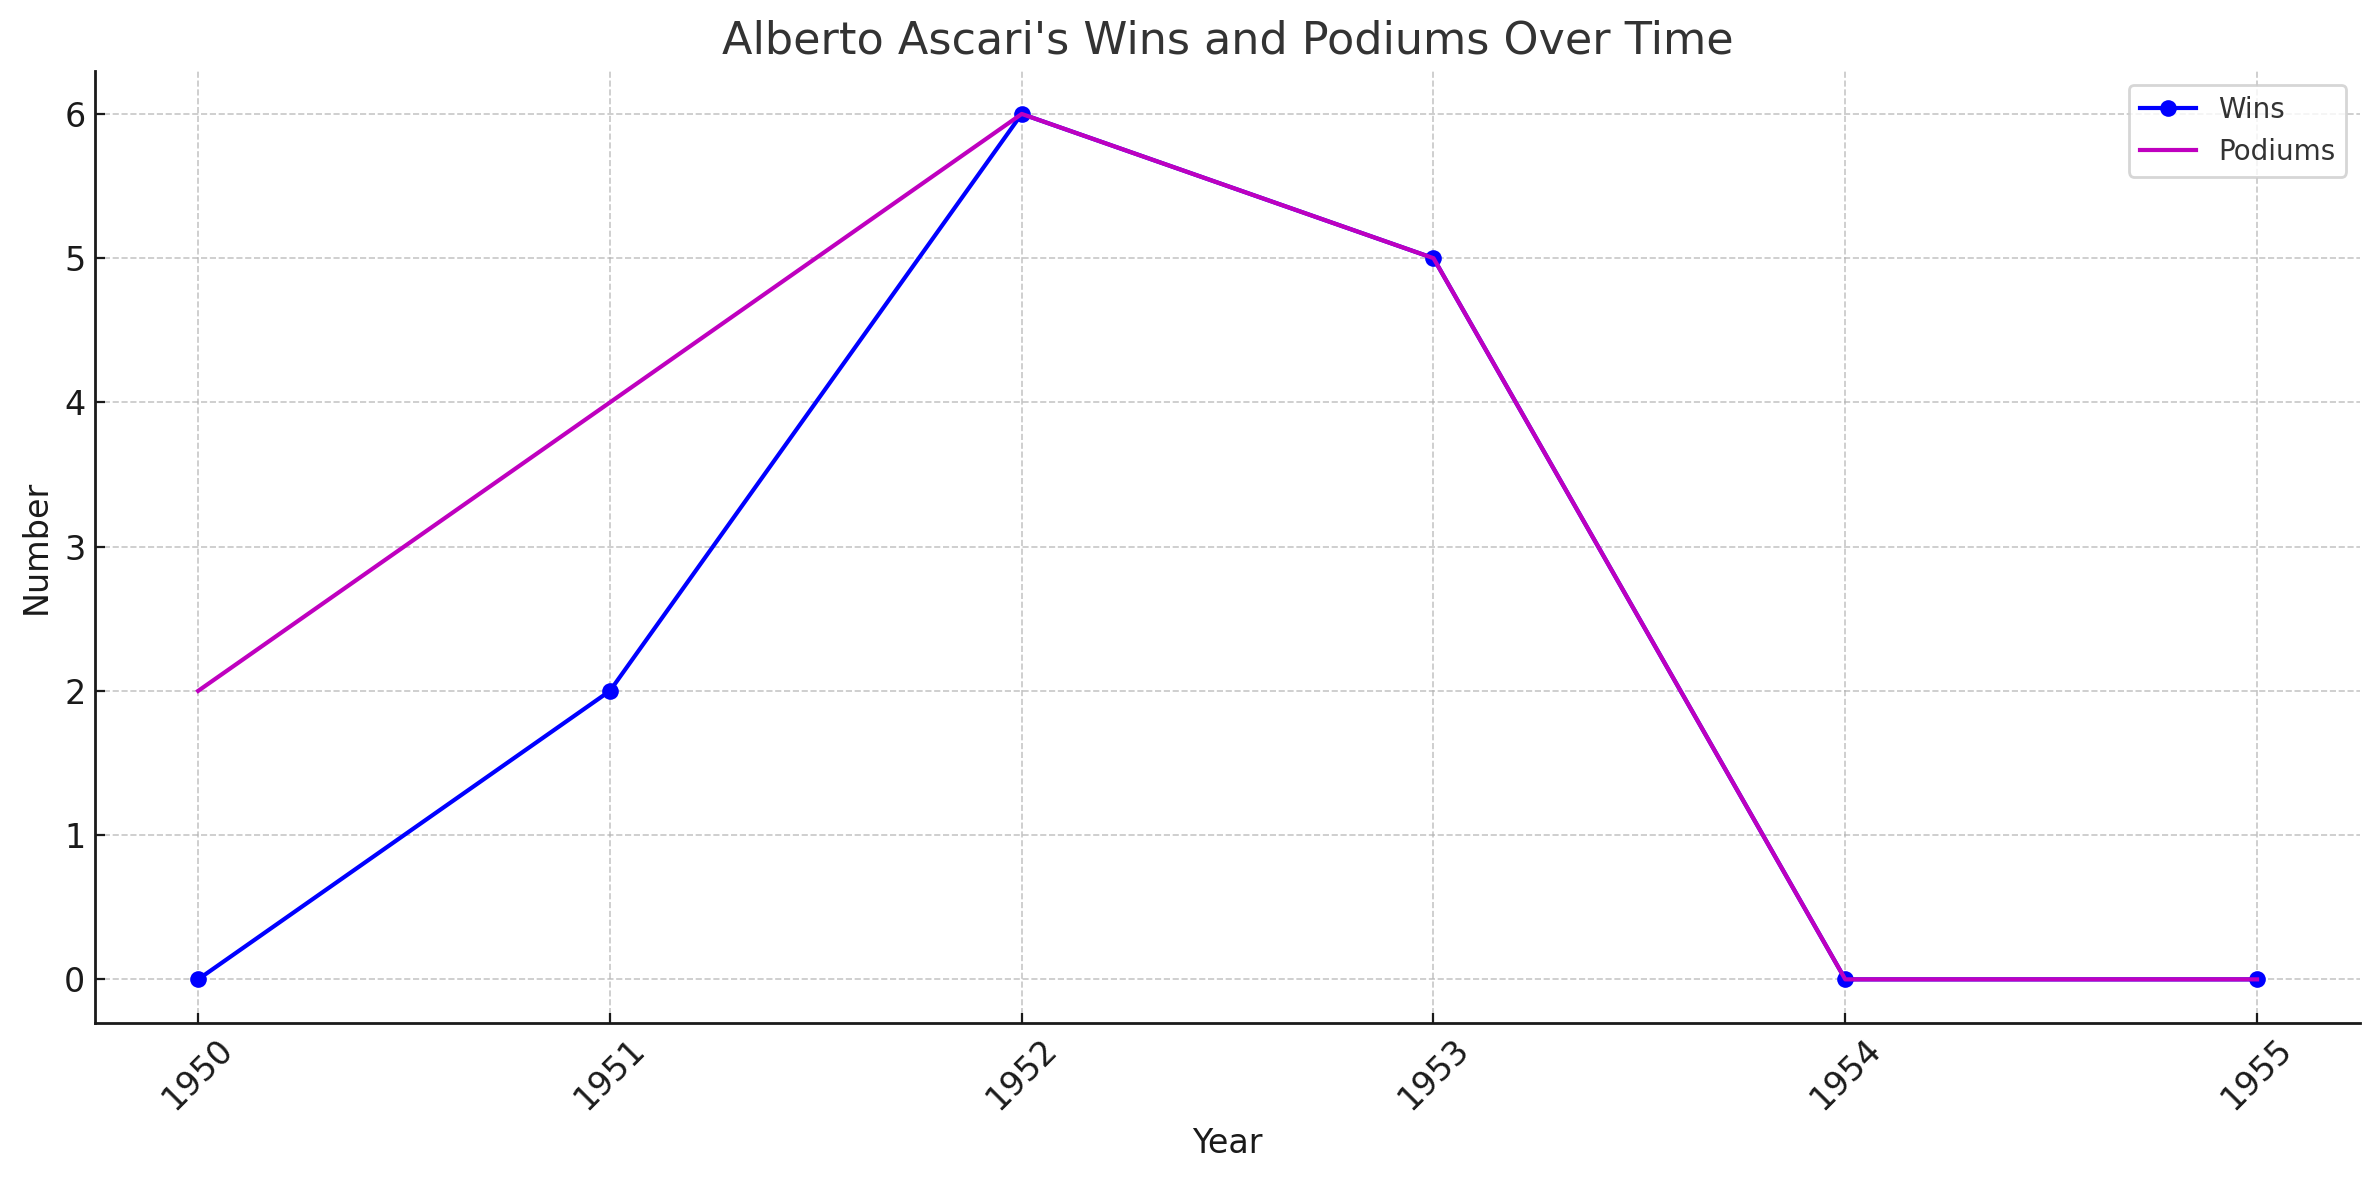 Alberto Ascari wins